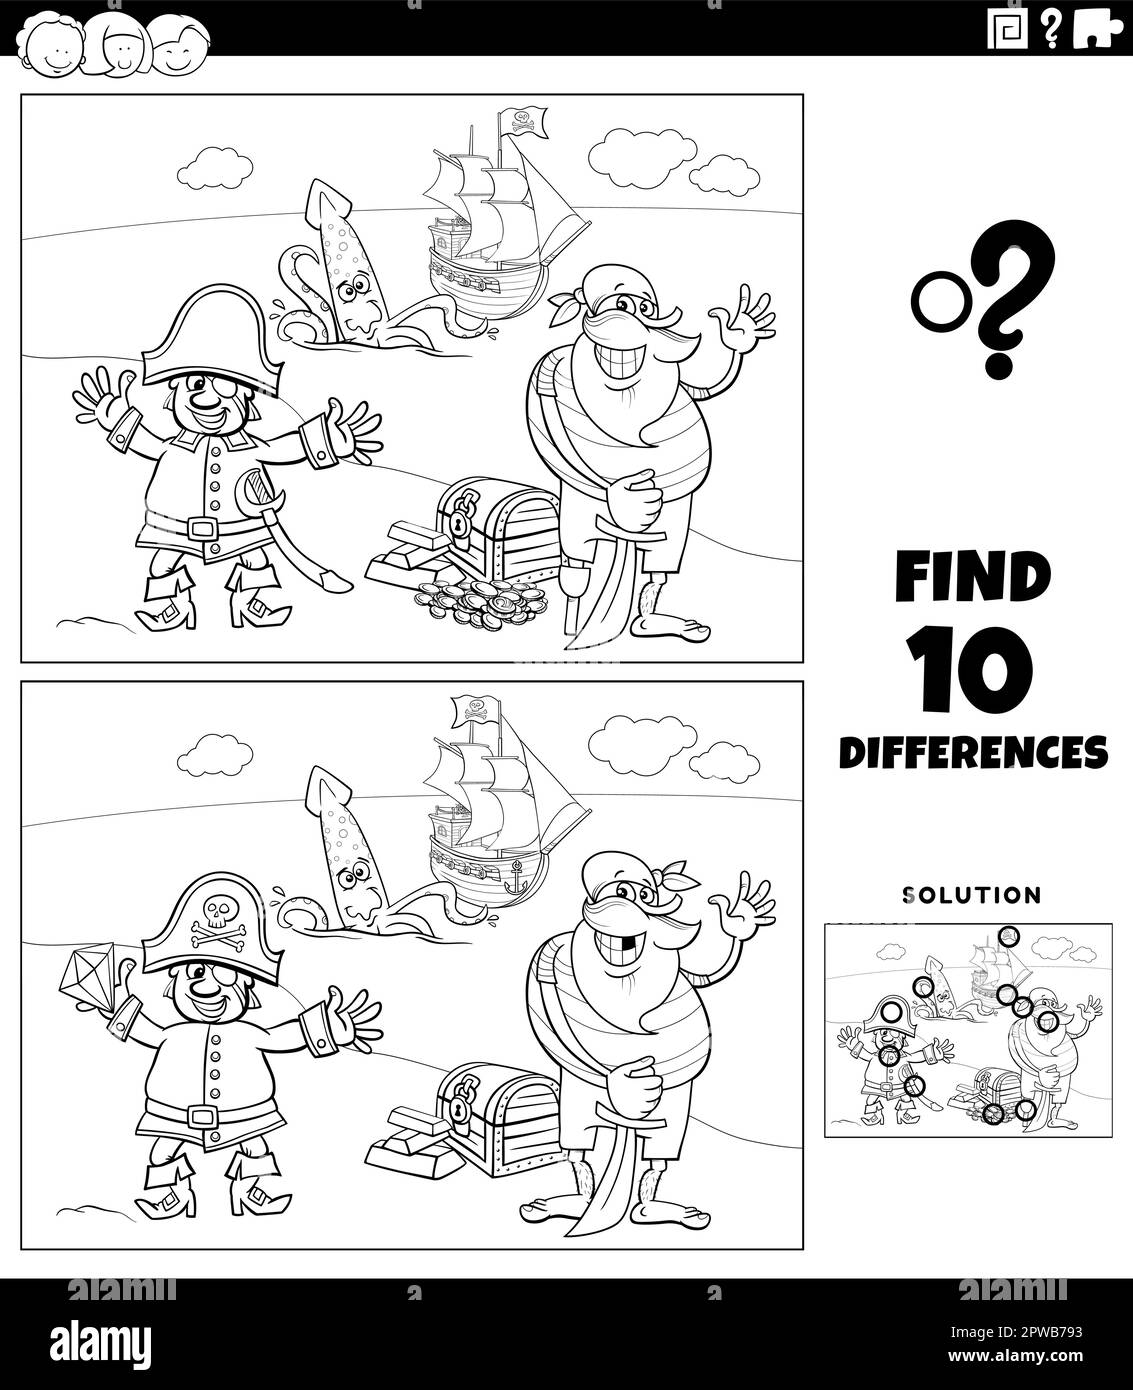 Personaje del juego de calamar imãgen de stock en blanco y negro